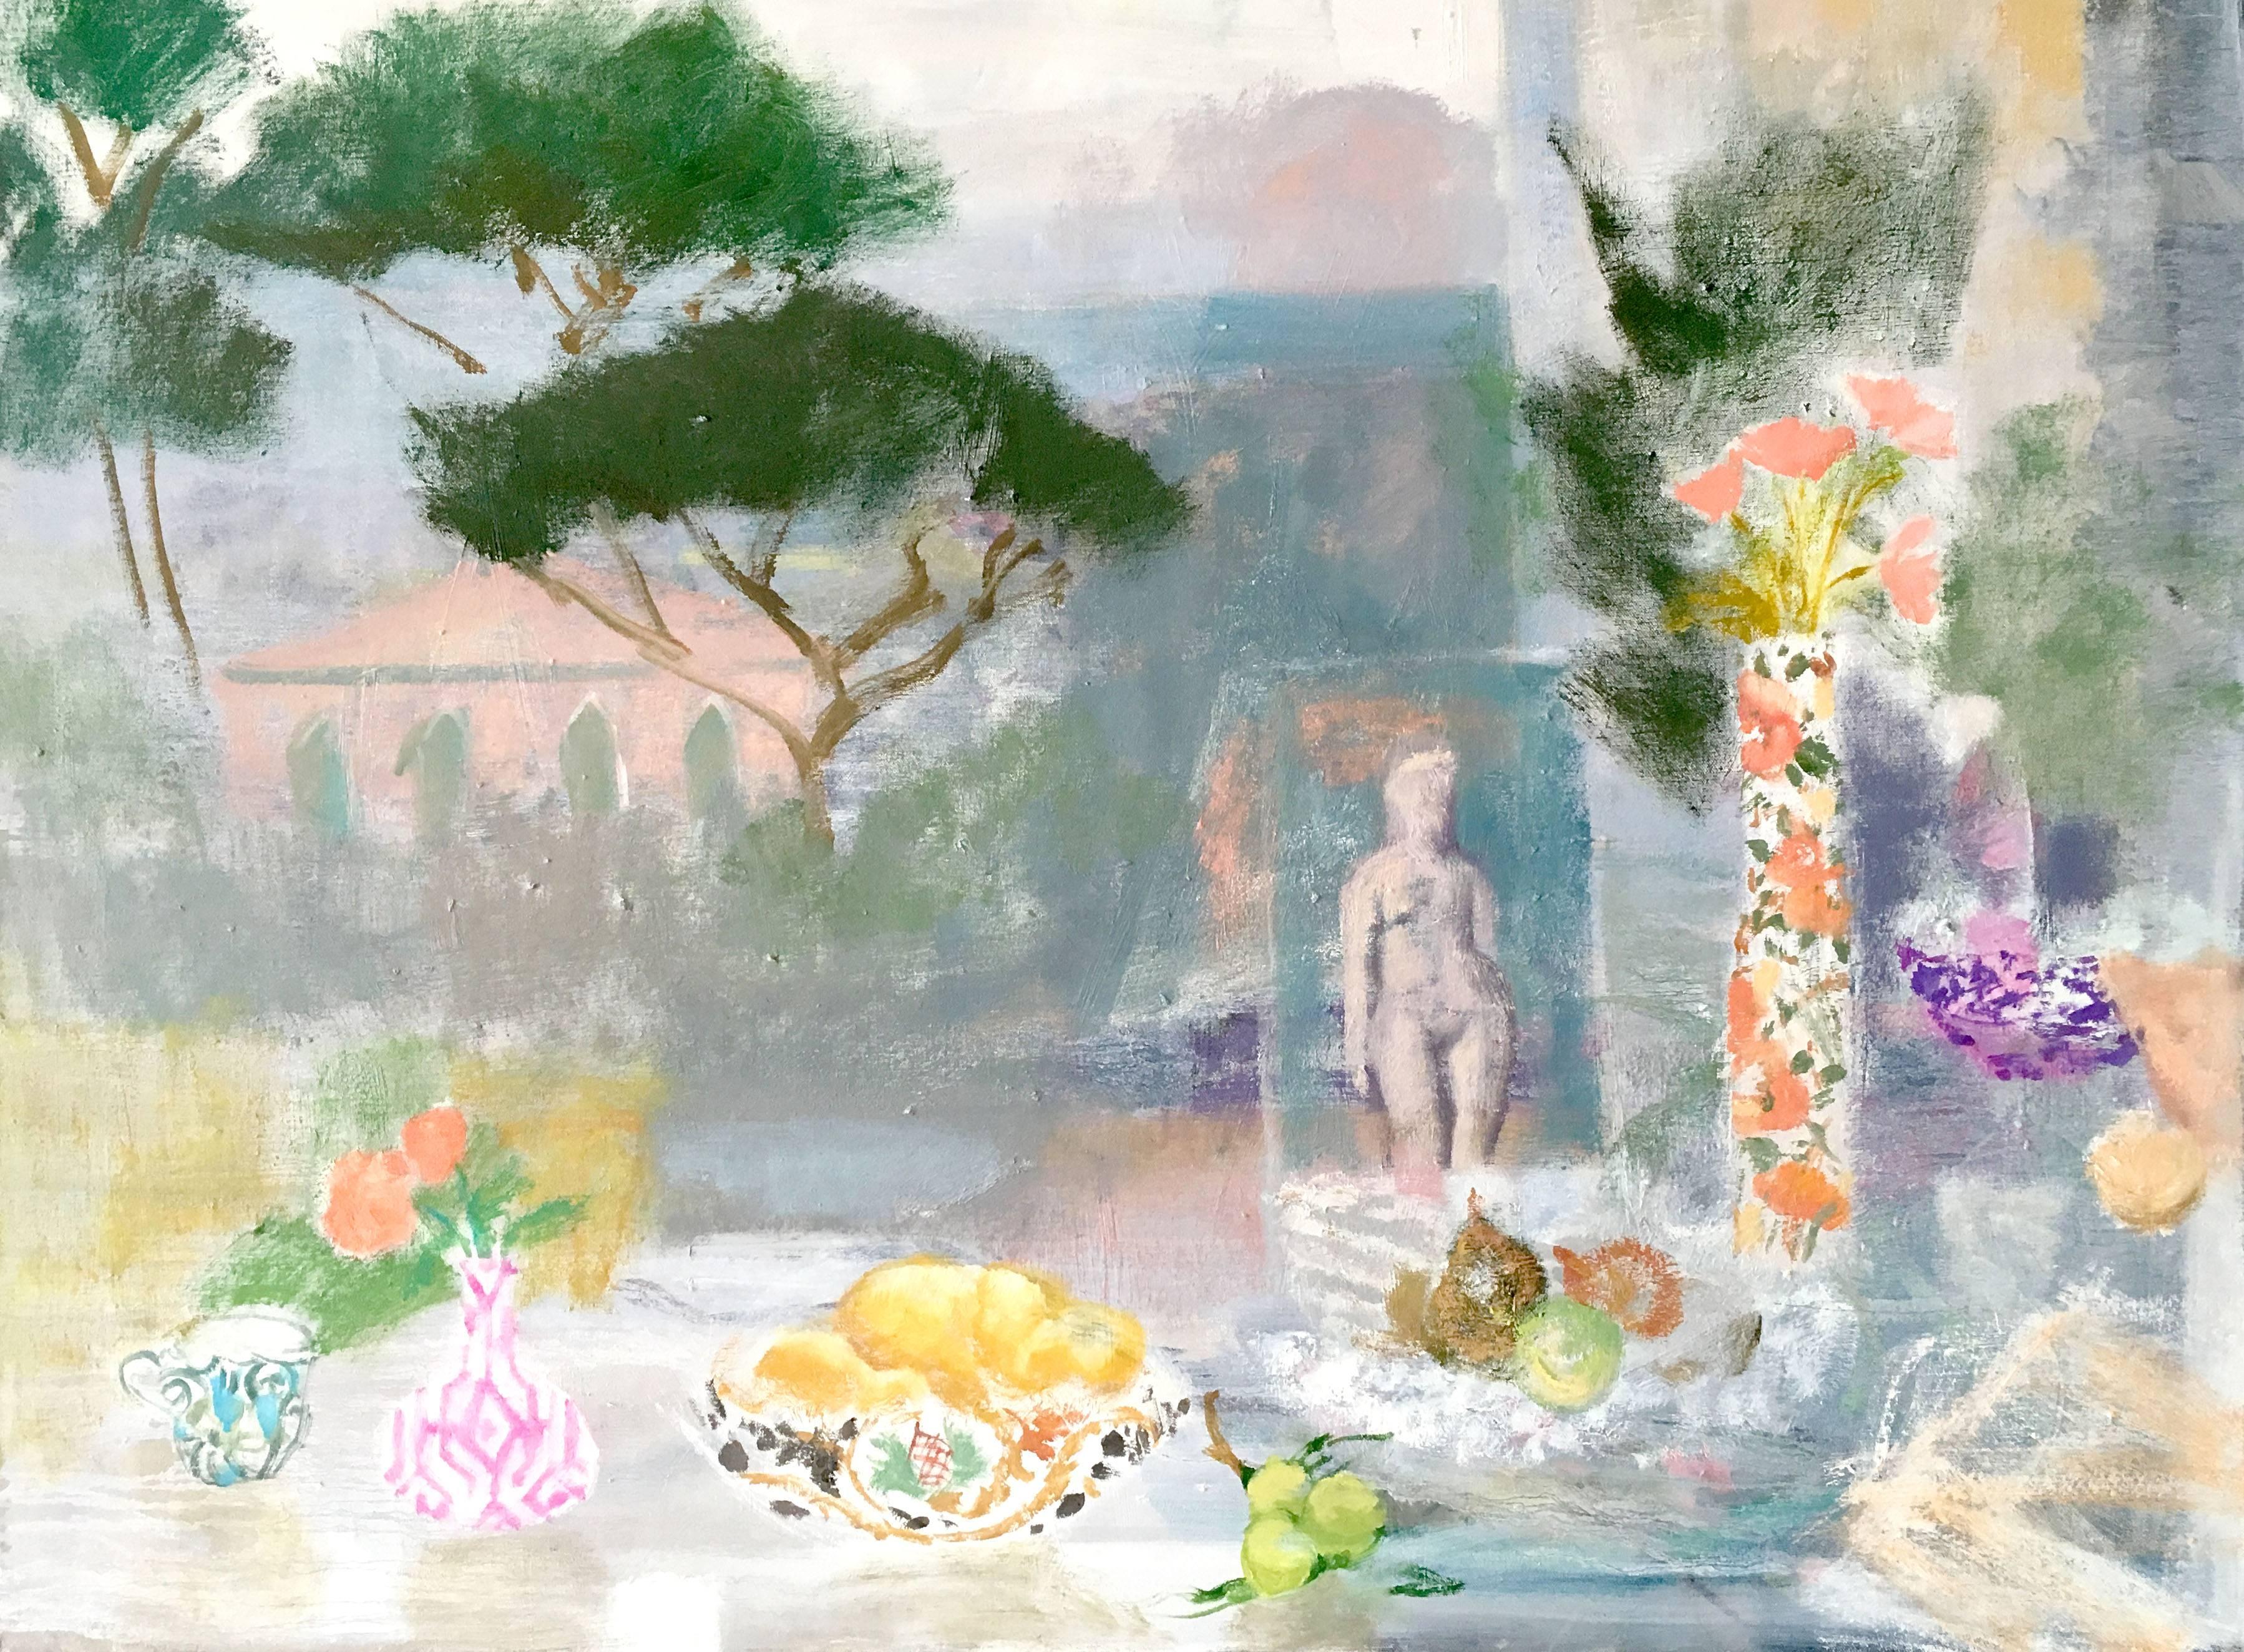 Postkartenplakat von Torcello, Obst, grüne gelbe Birnen, pfirsichfarbene Blumen, Figur, grüne Bäume